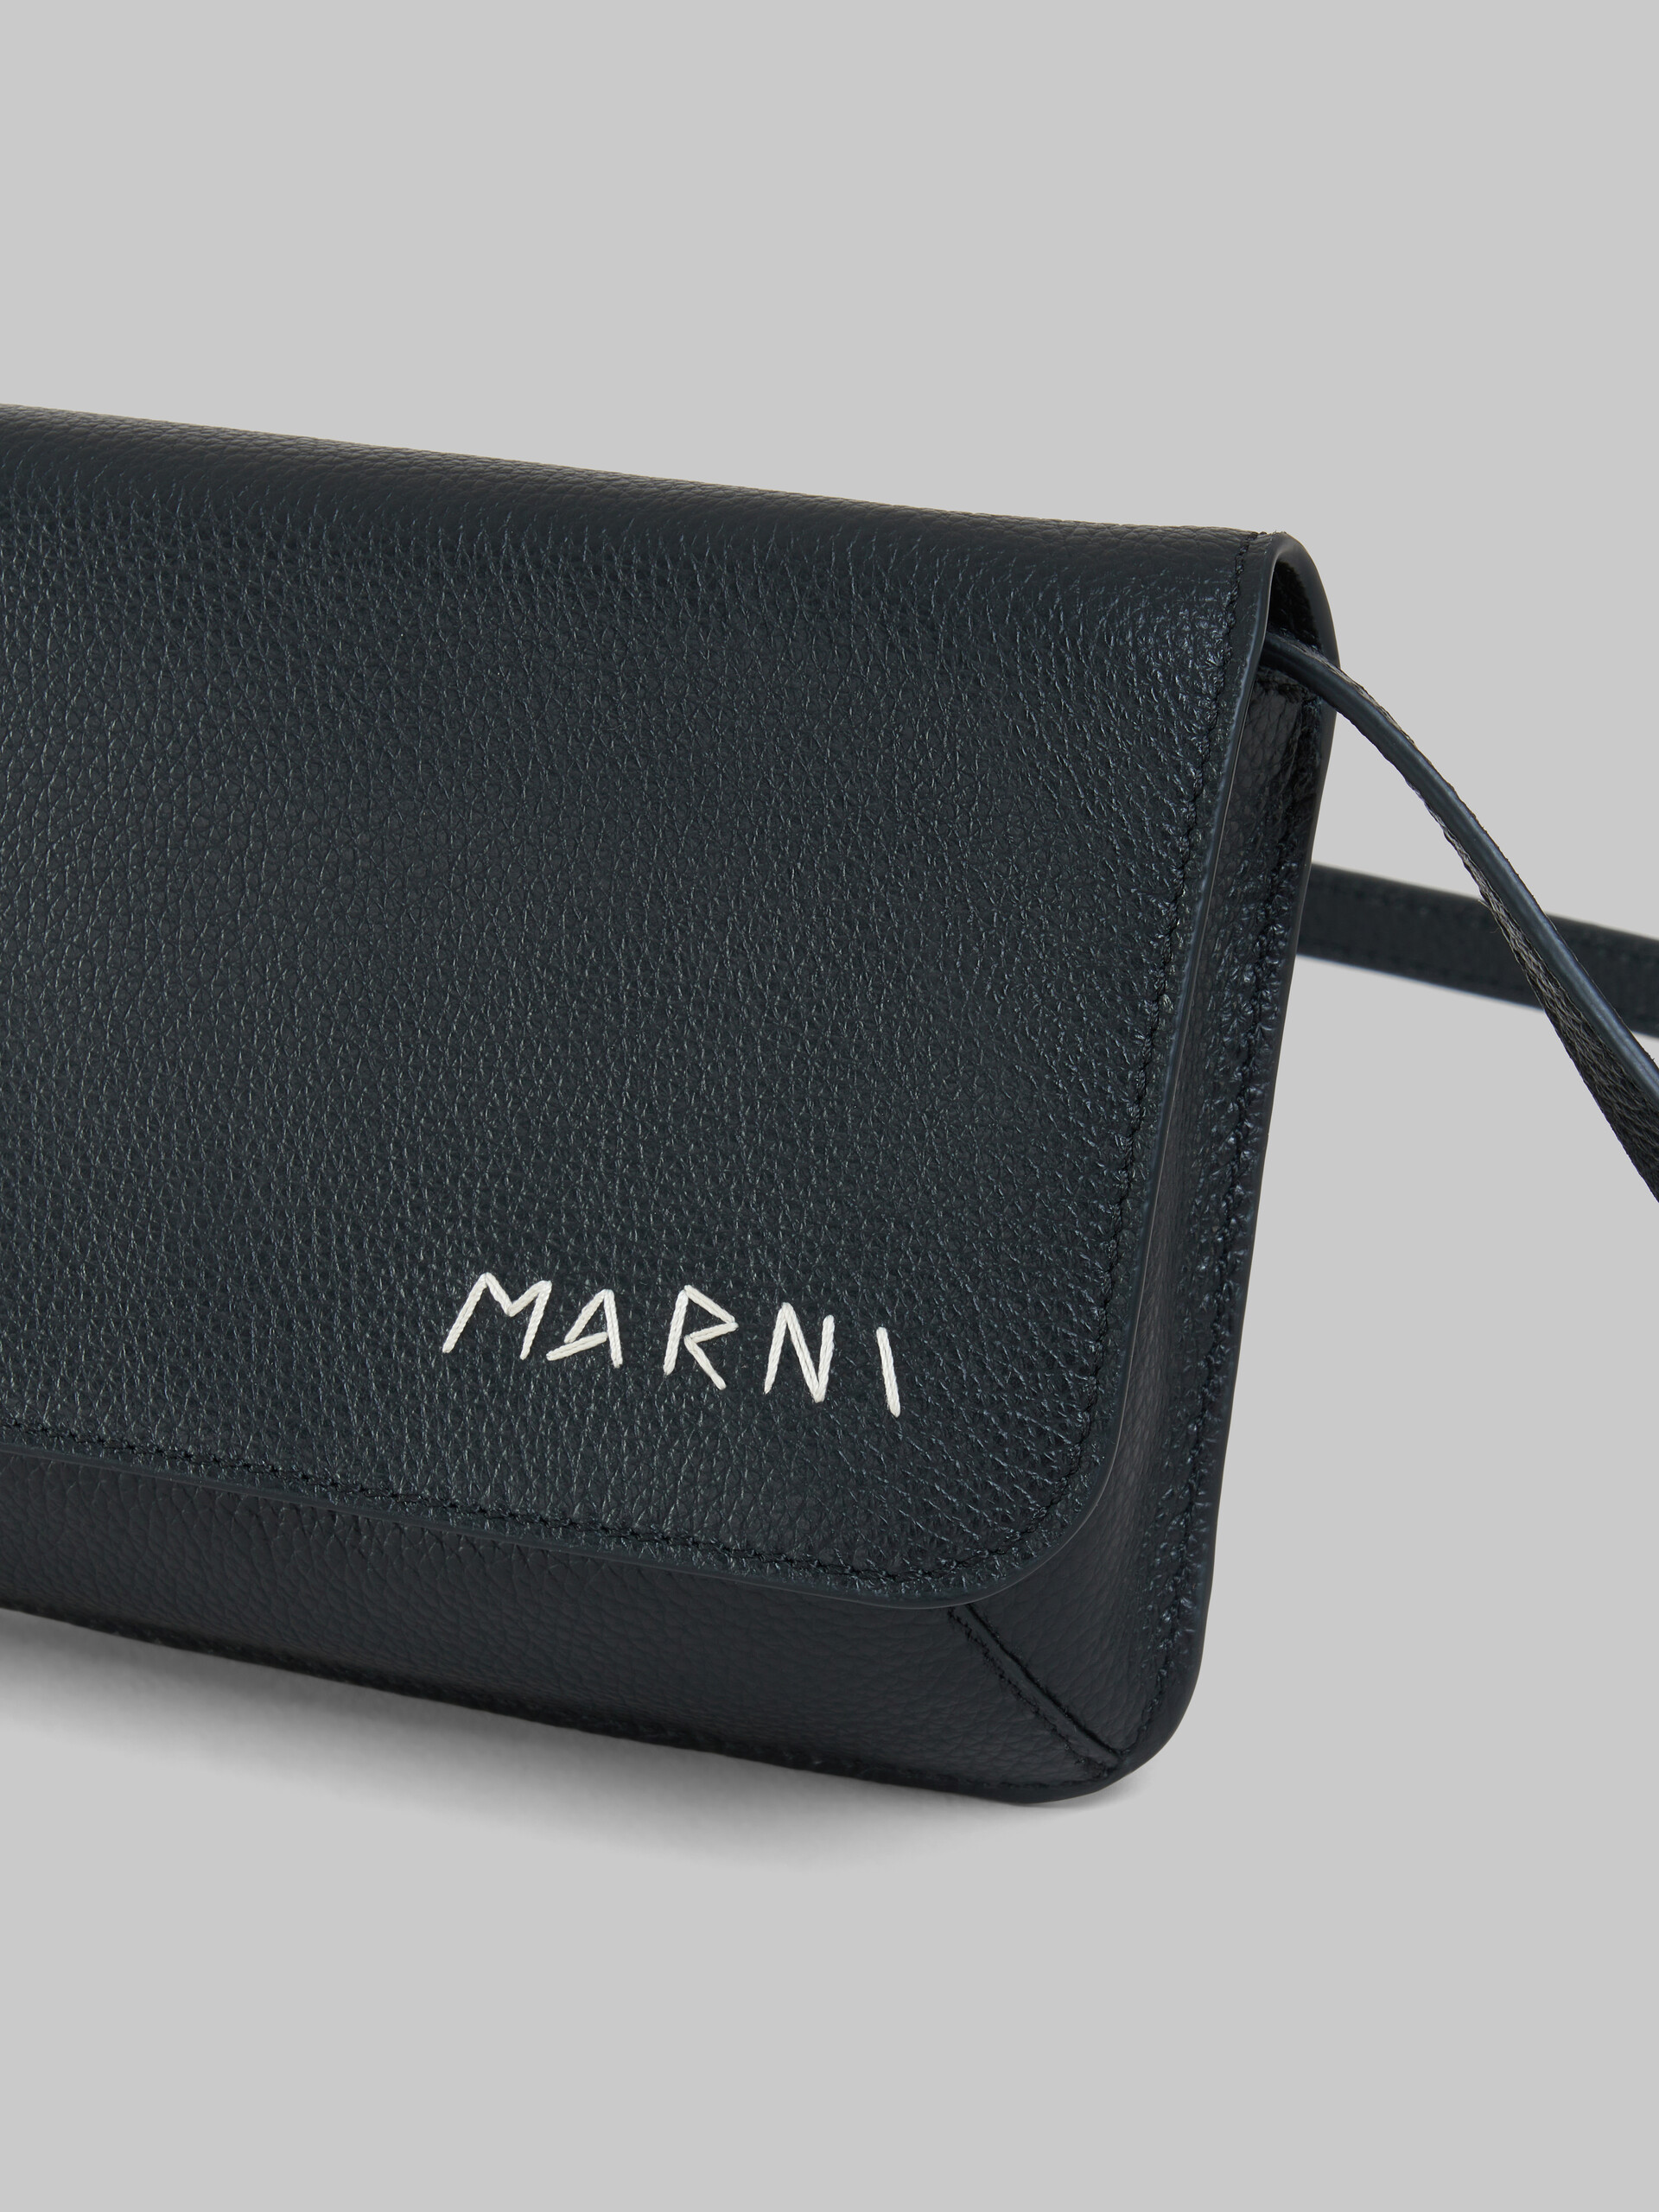 Black leather shoulder bag with Marni Mending - Pochettes - Image 5